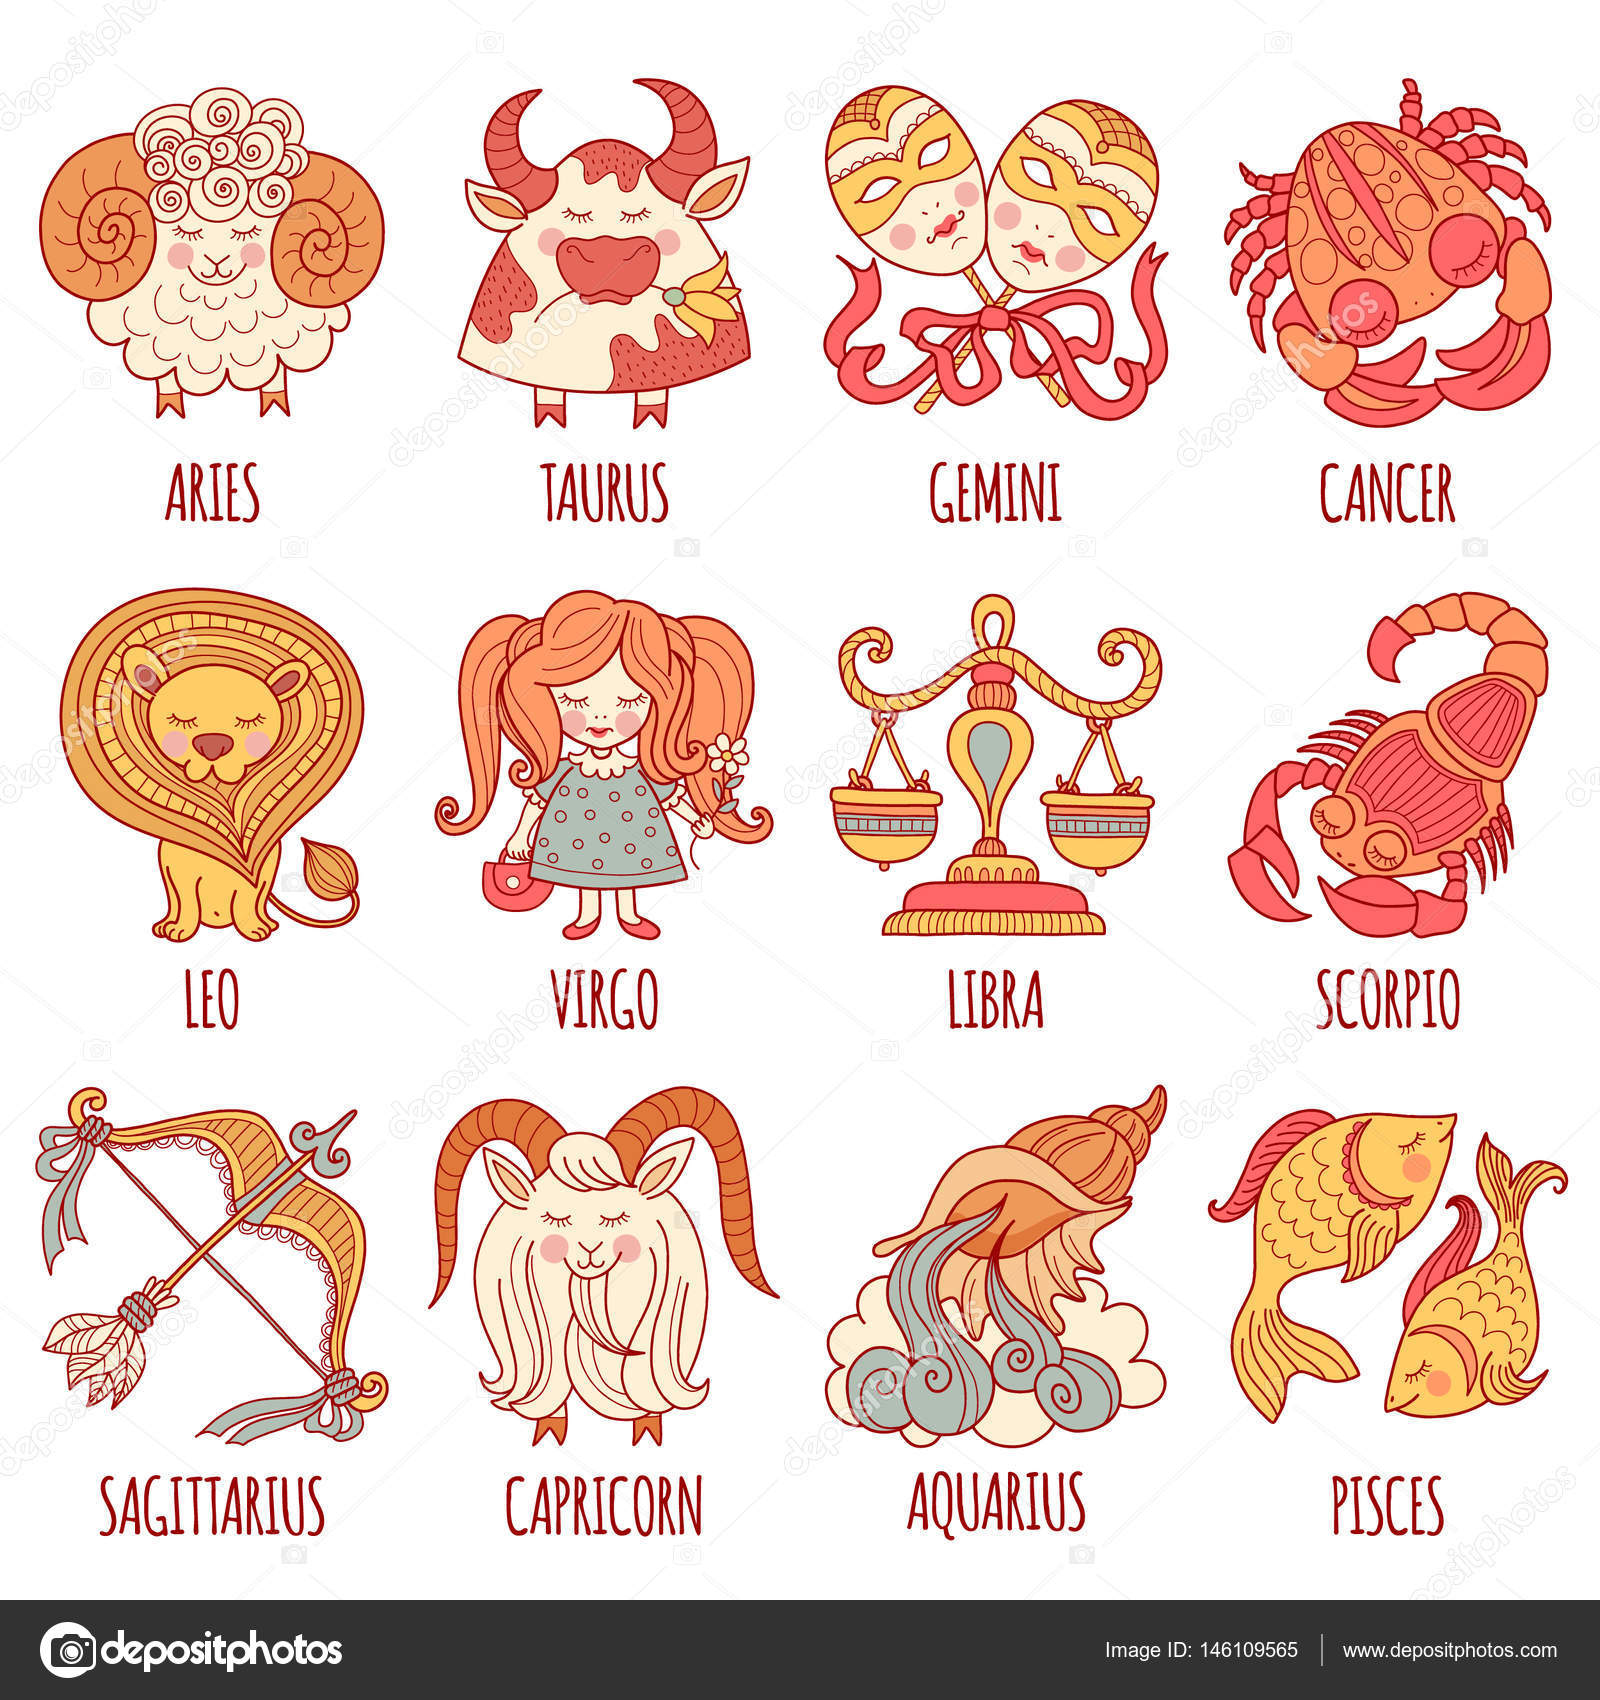 Рисунки знаков зодиака с названиями